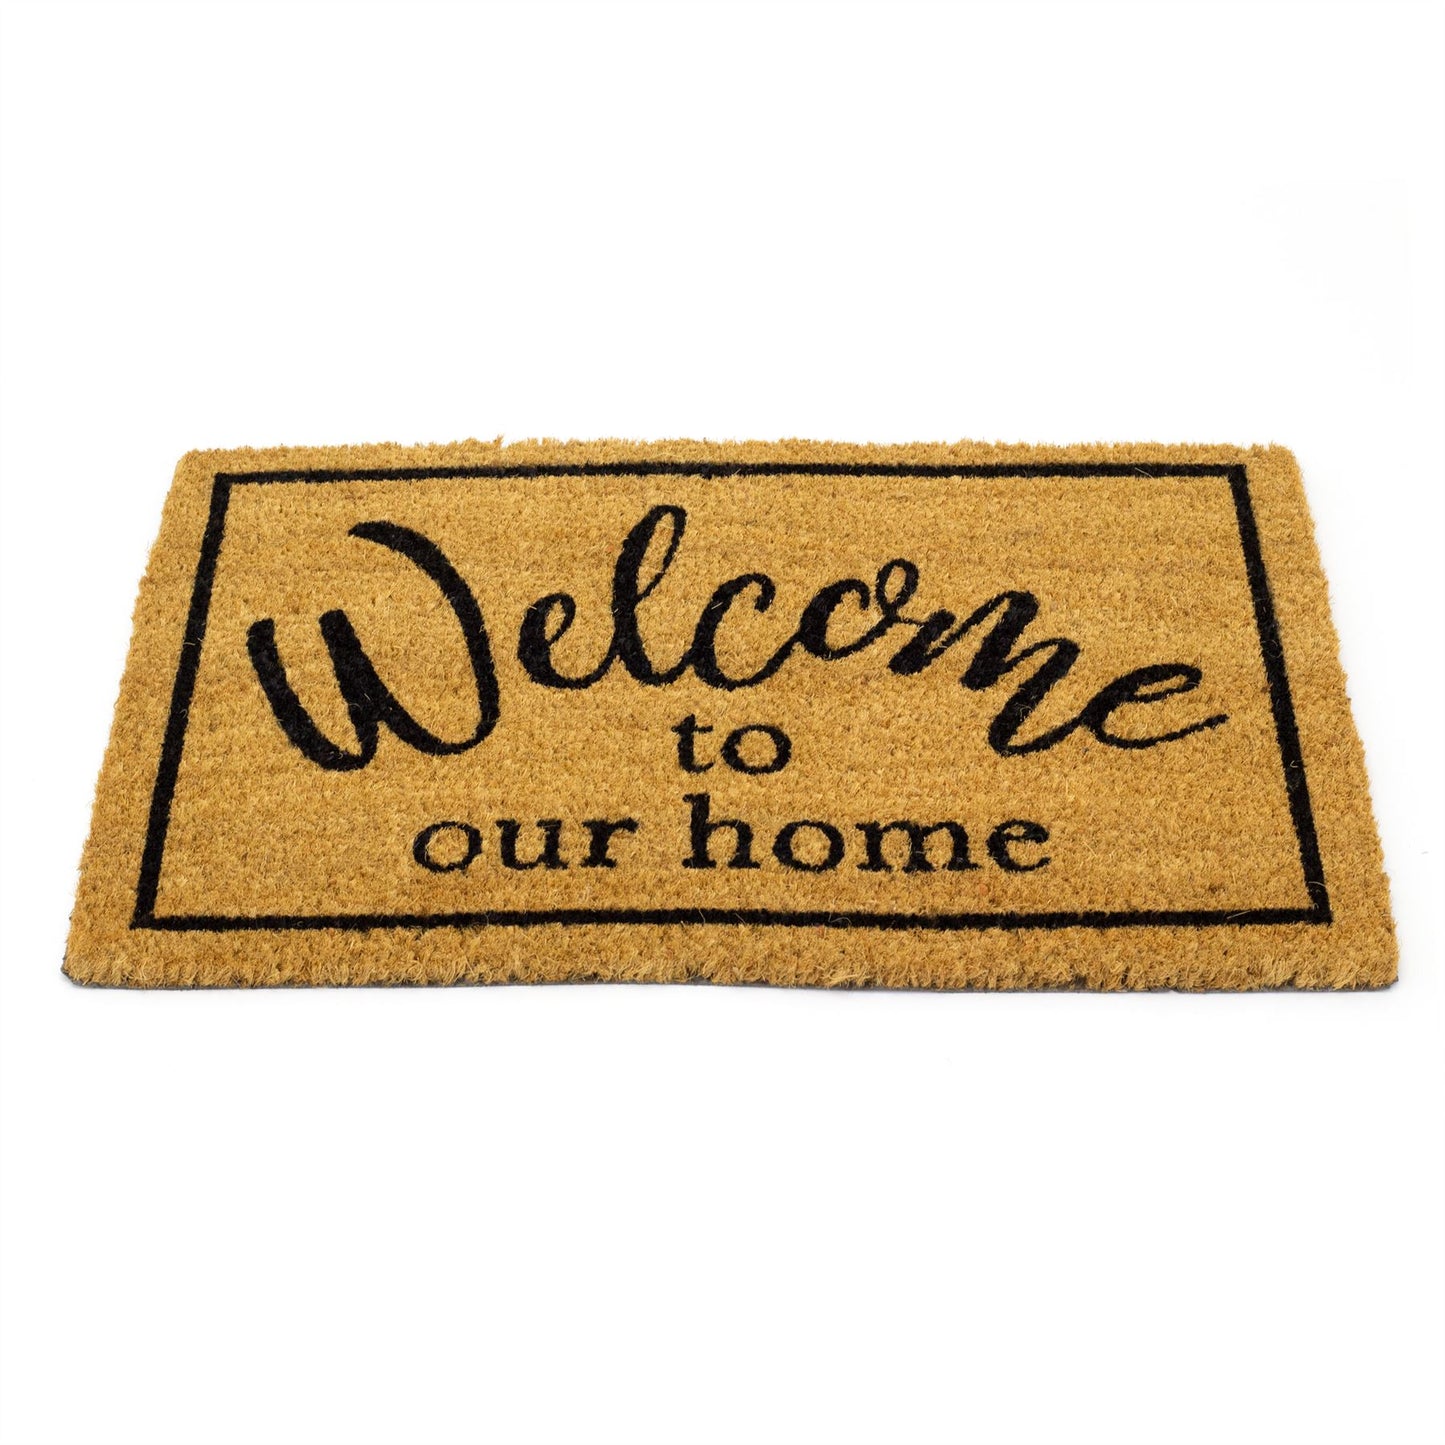 60x40cm Welcome Doormat | Non-slip Rectangular Entrance Welcome Coir Door Mat